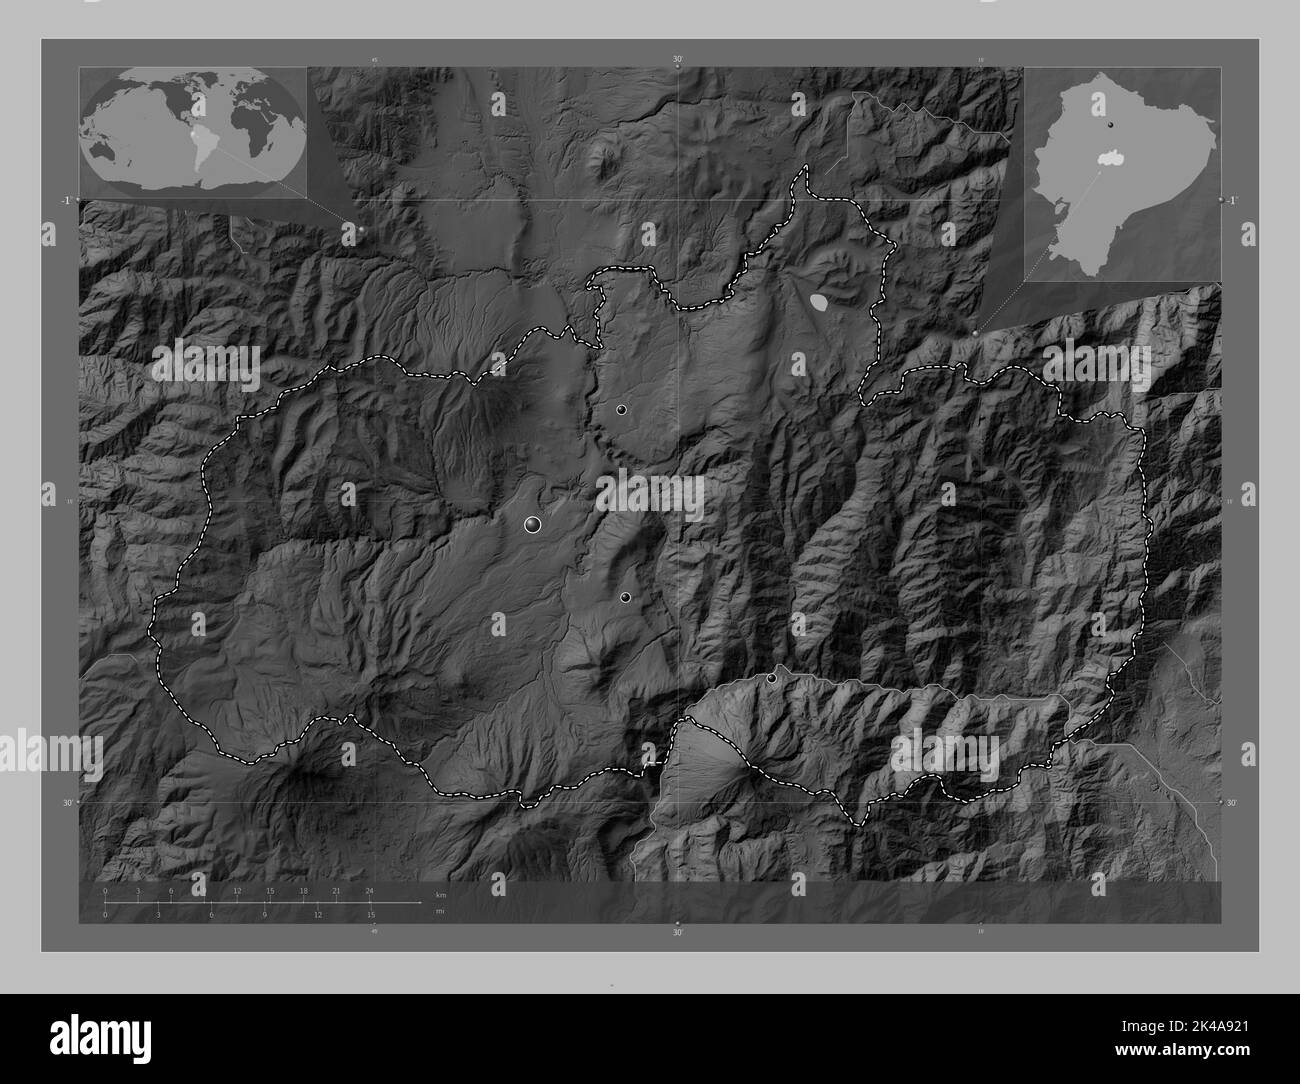 Tungurahua, province de l'Équateur. Carte d'altitude en niveaux de gris avec lacs et rivières. Lieux des principales villes de la région. Carte d'emplacement auxiliaire d'angle Banque D'Images